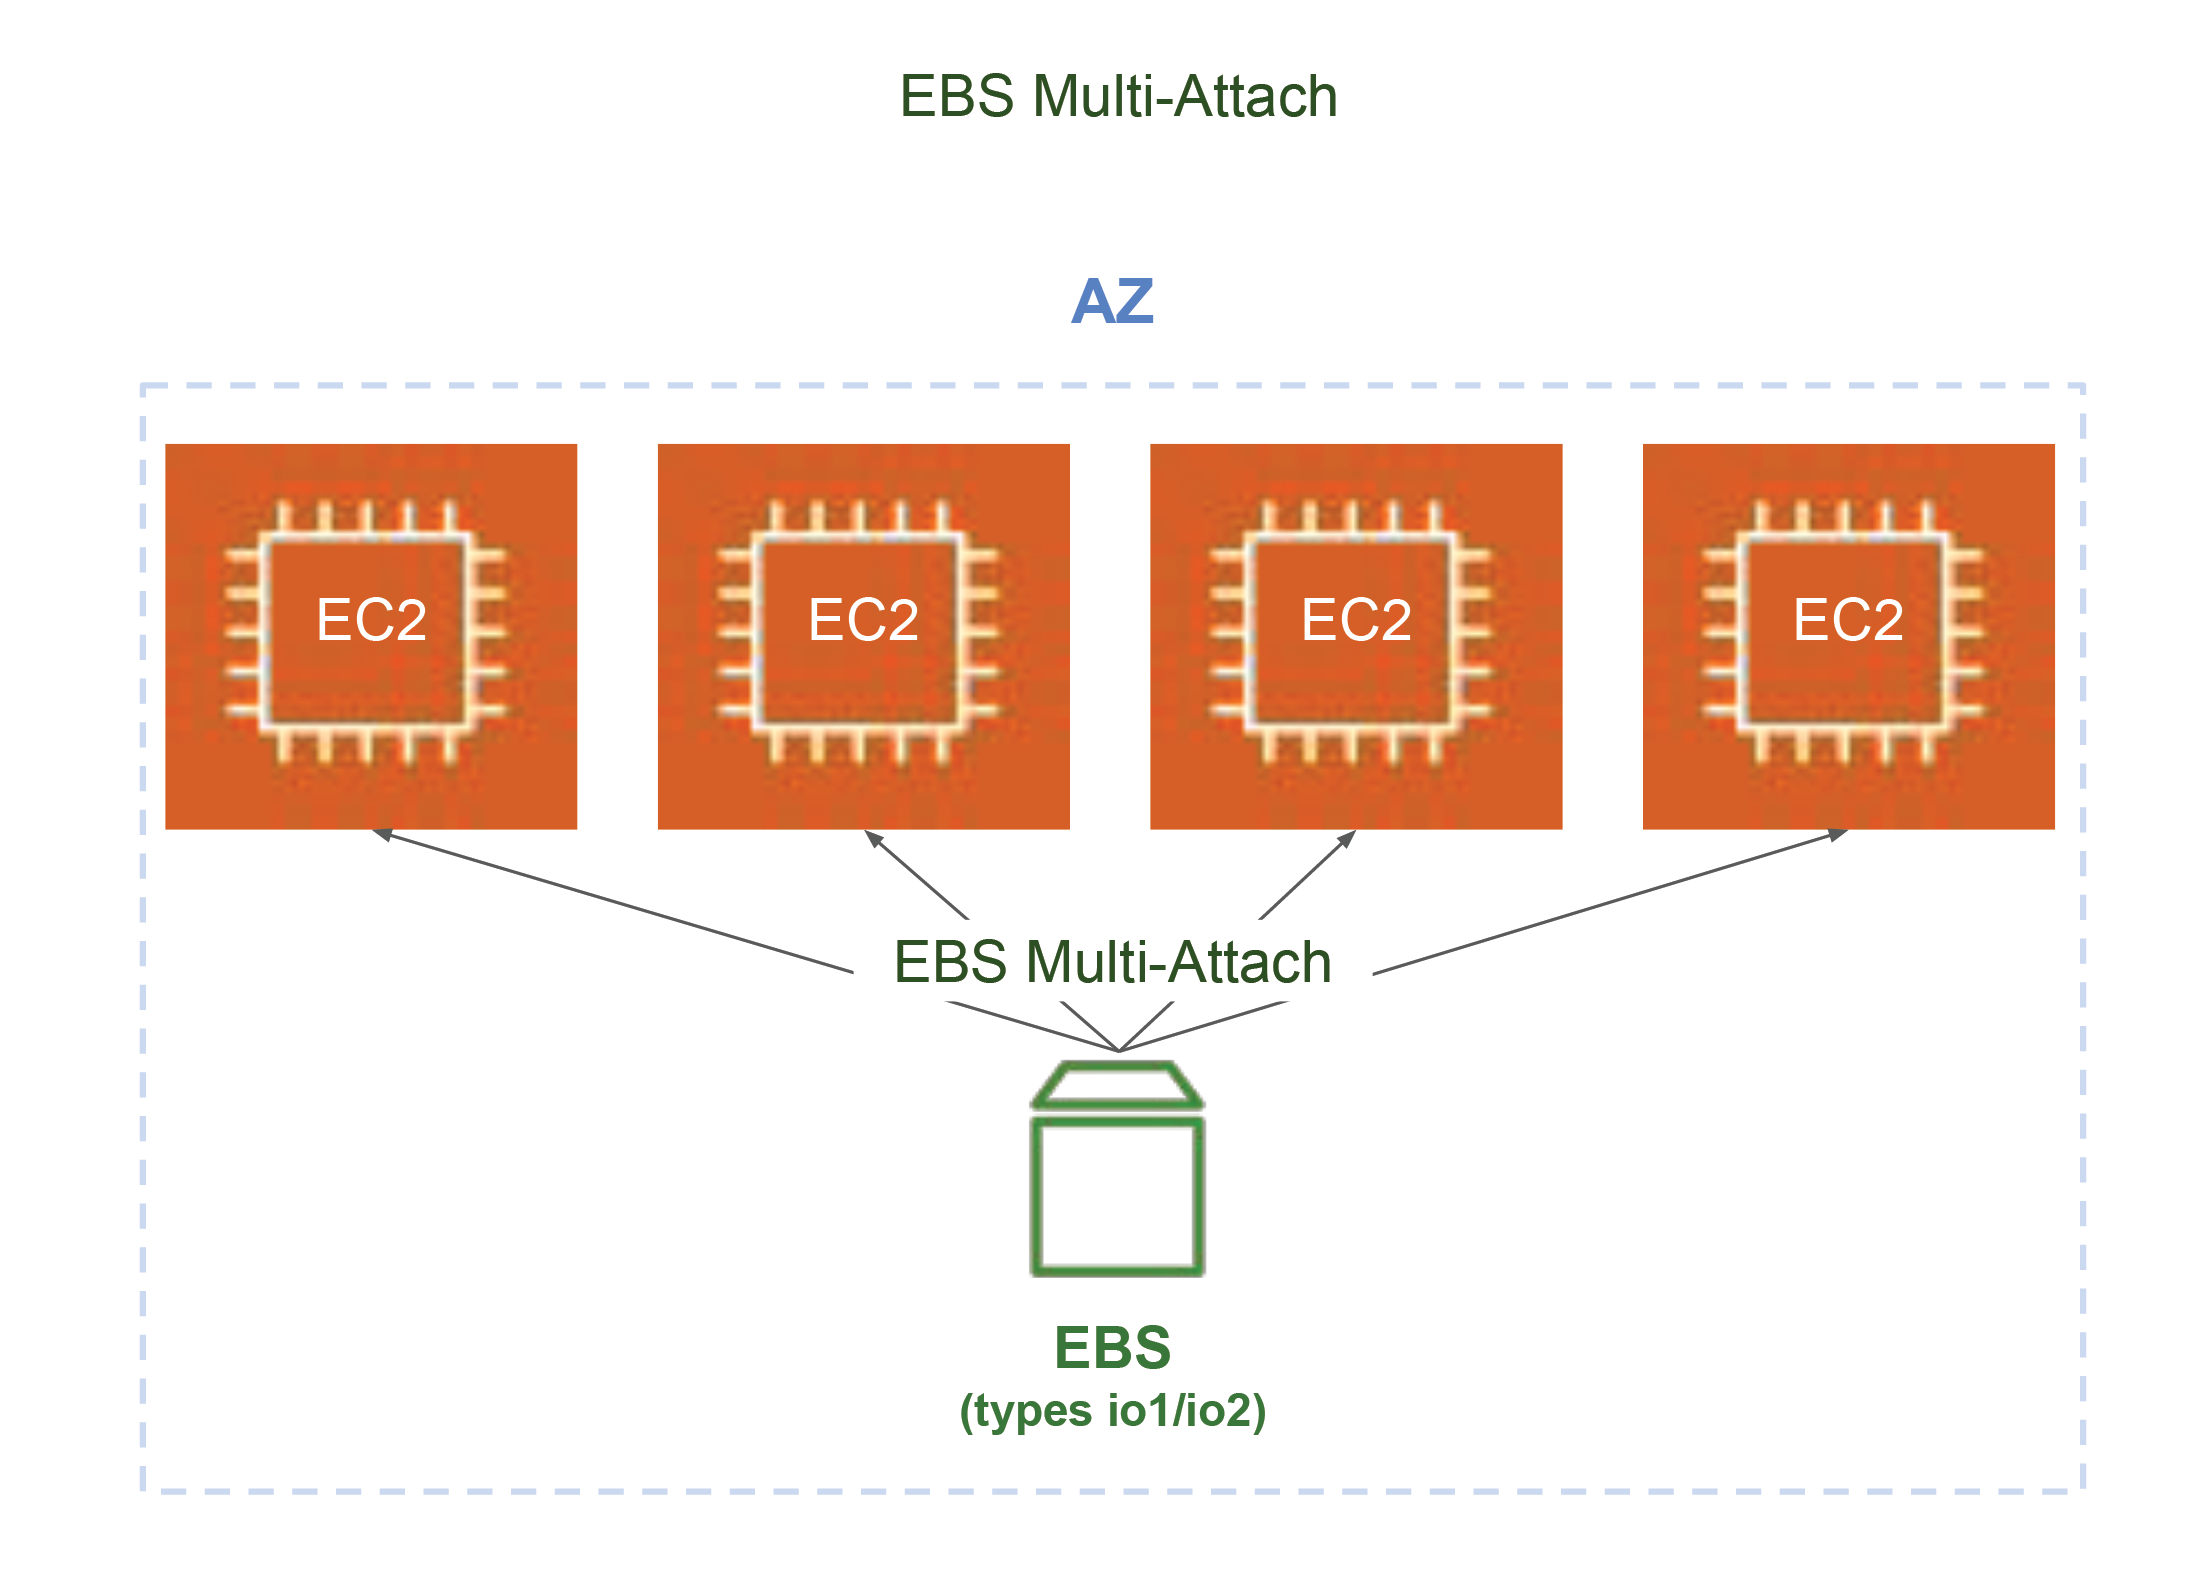 onctionnalité EBS Multi-Attach : un volume EBS peut être attaché à différentes instances EC2 dans une même AZ